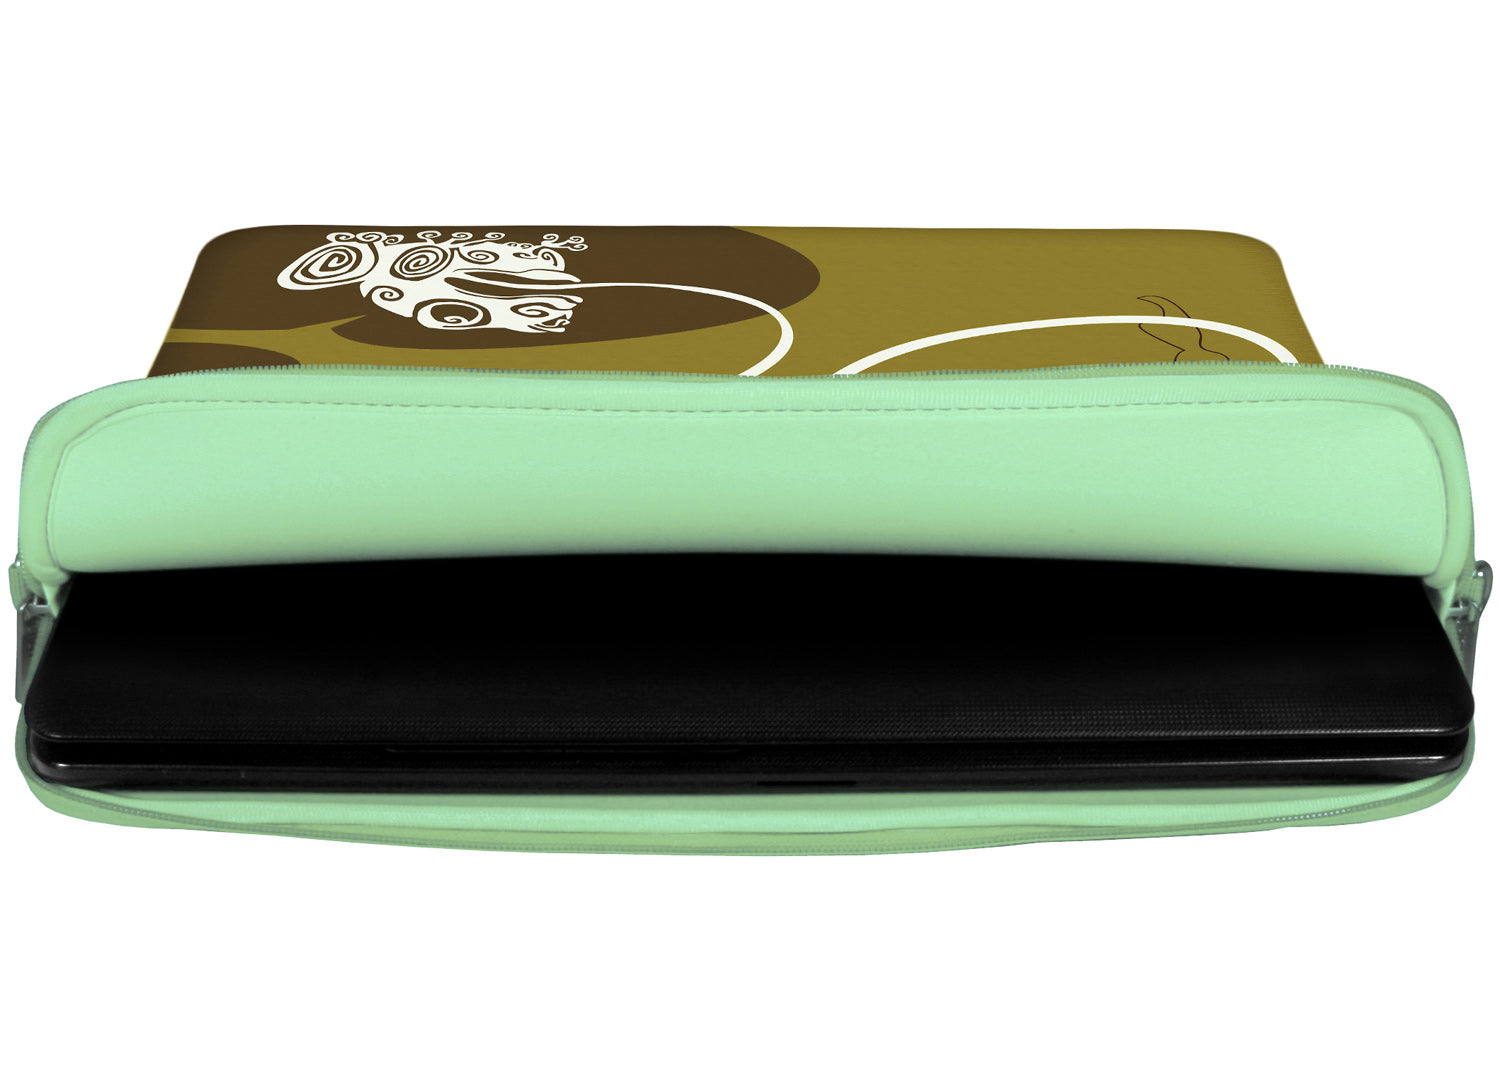 Innenansicht mit Schutzlippen der LS147 Frog King Designer Laptop Tasche in türkis aus wasserabweisendem Neopren